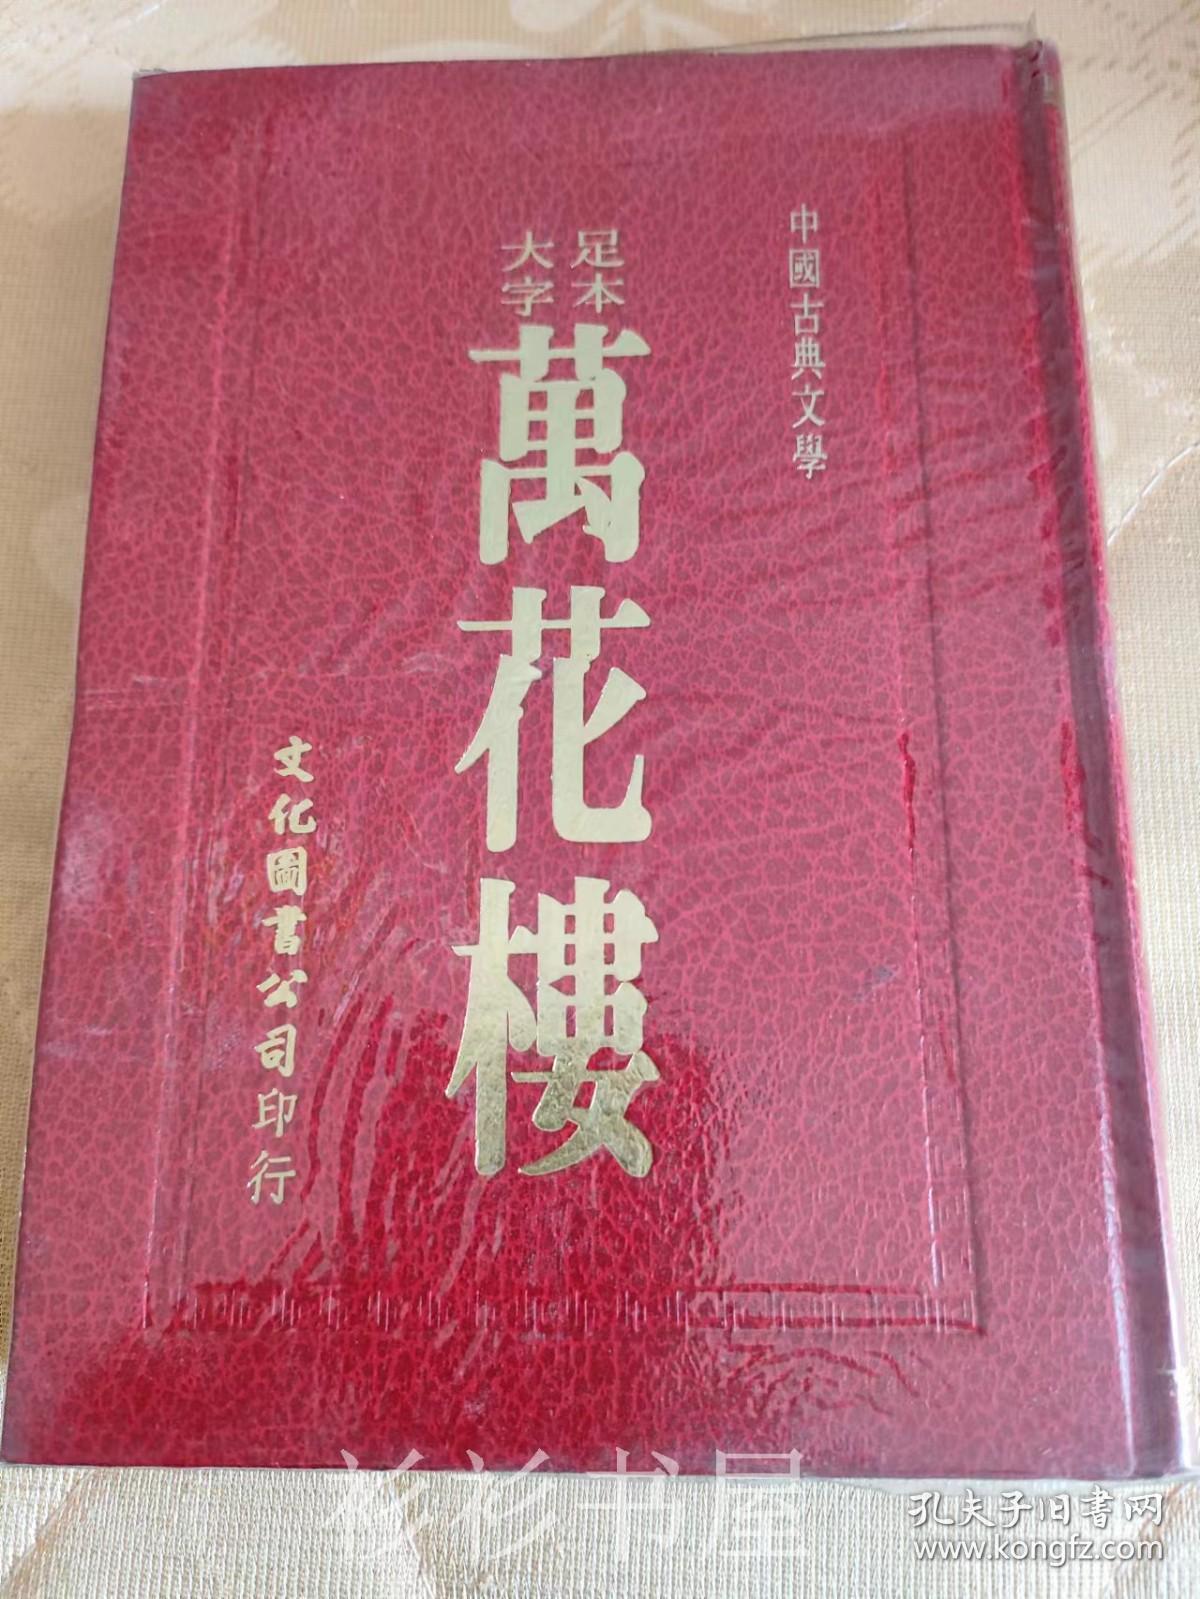 【繁体竖排精装】《足本大字万花楼》（中国古典文学）文化图书公司1984年版